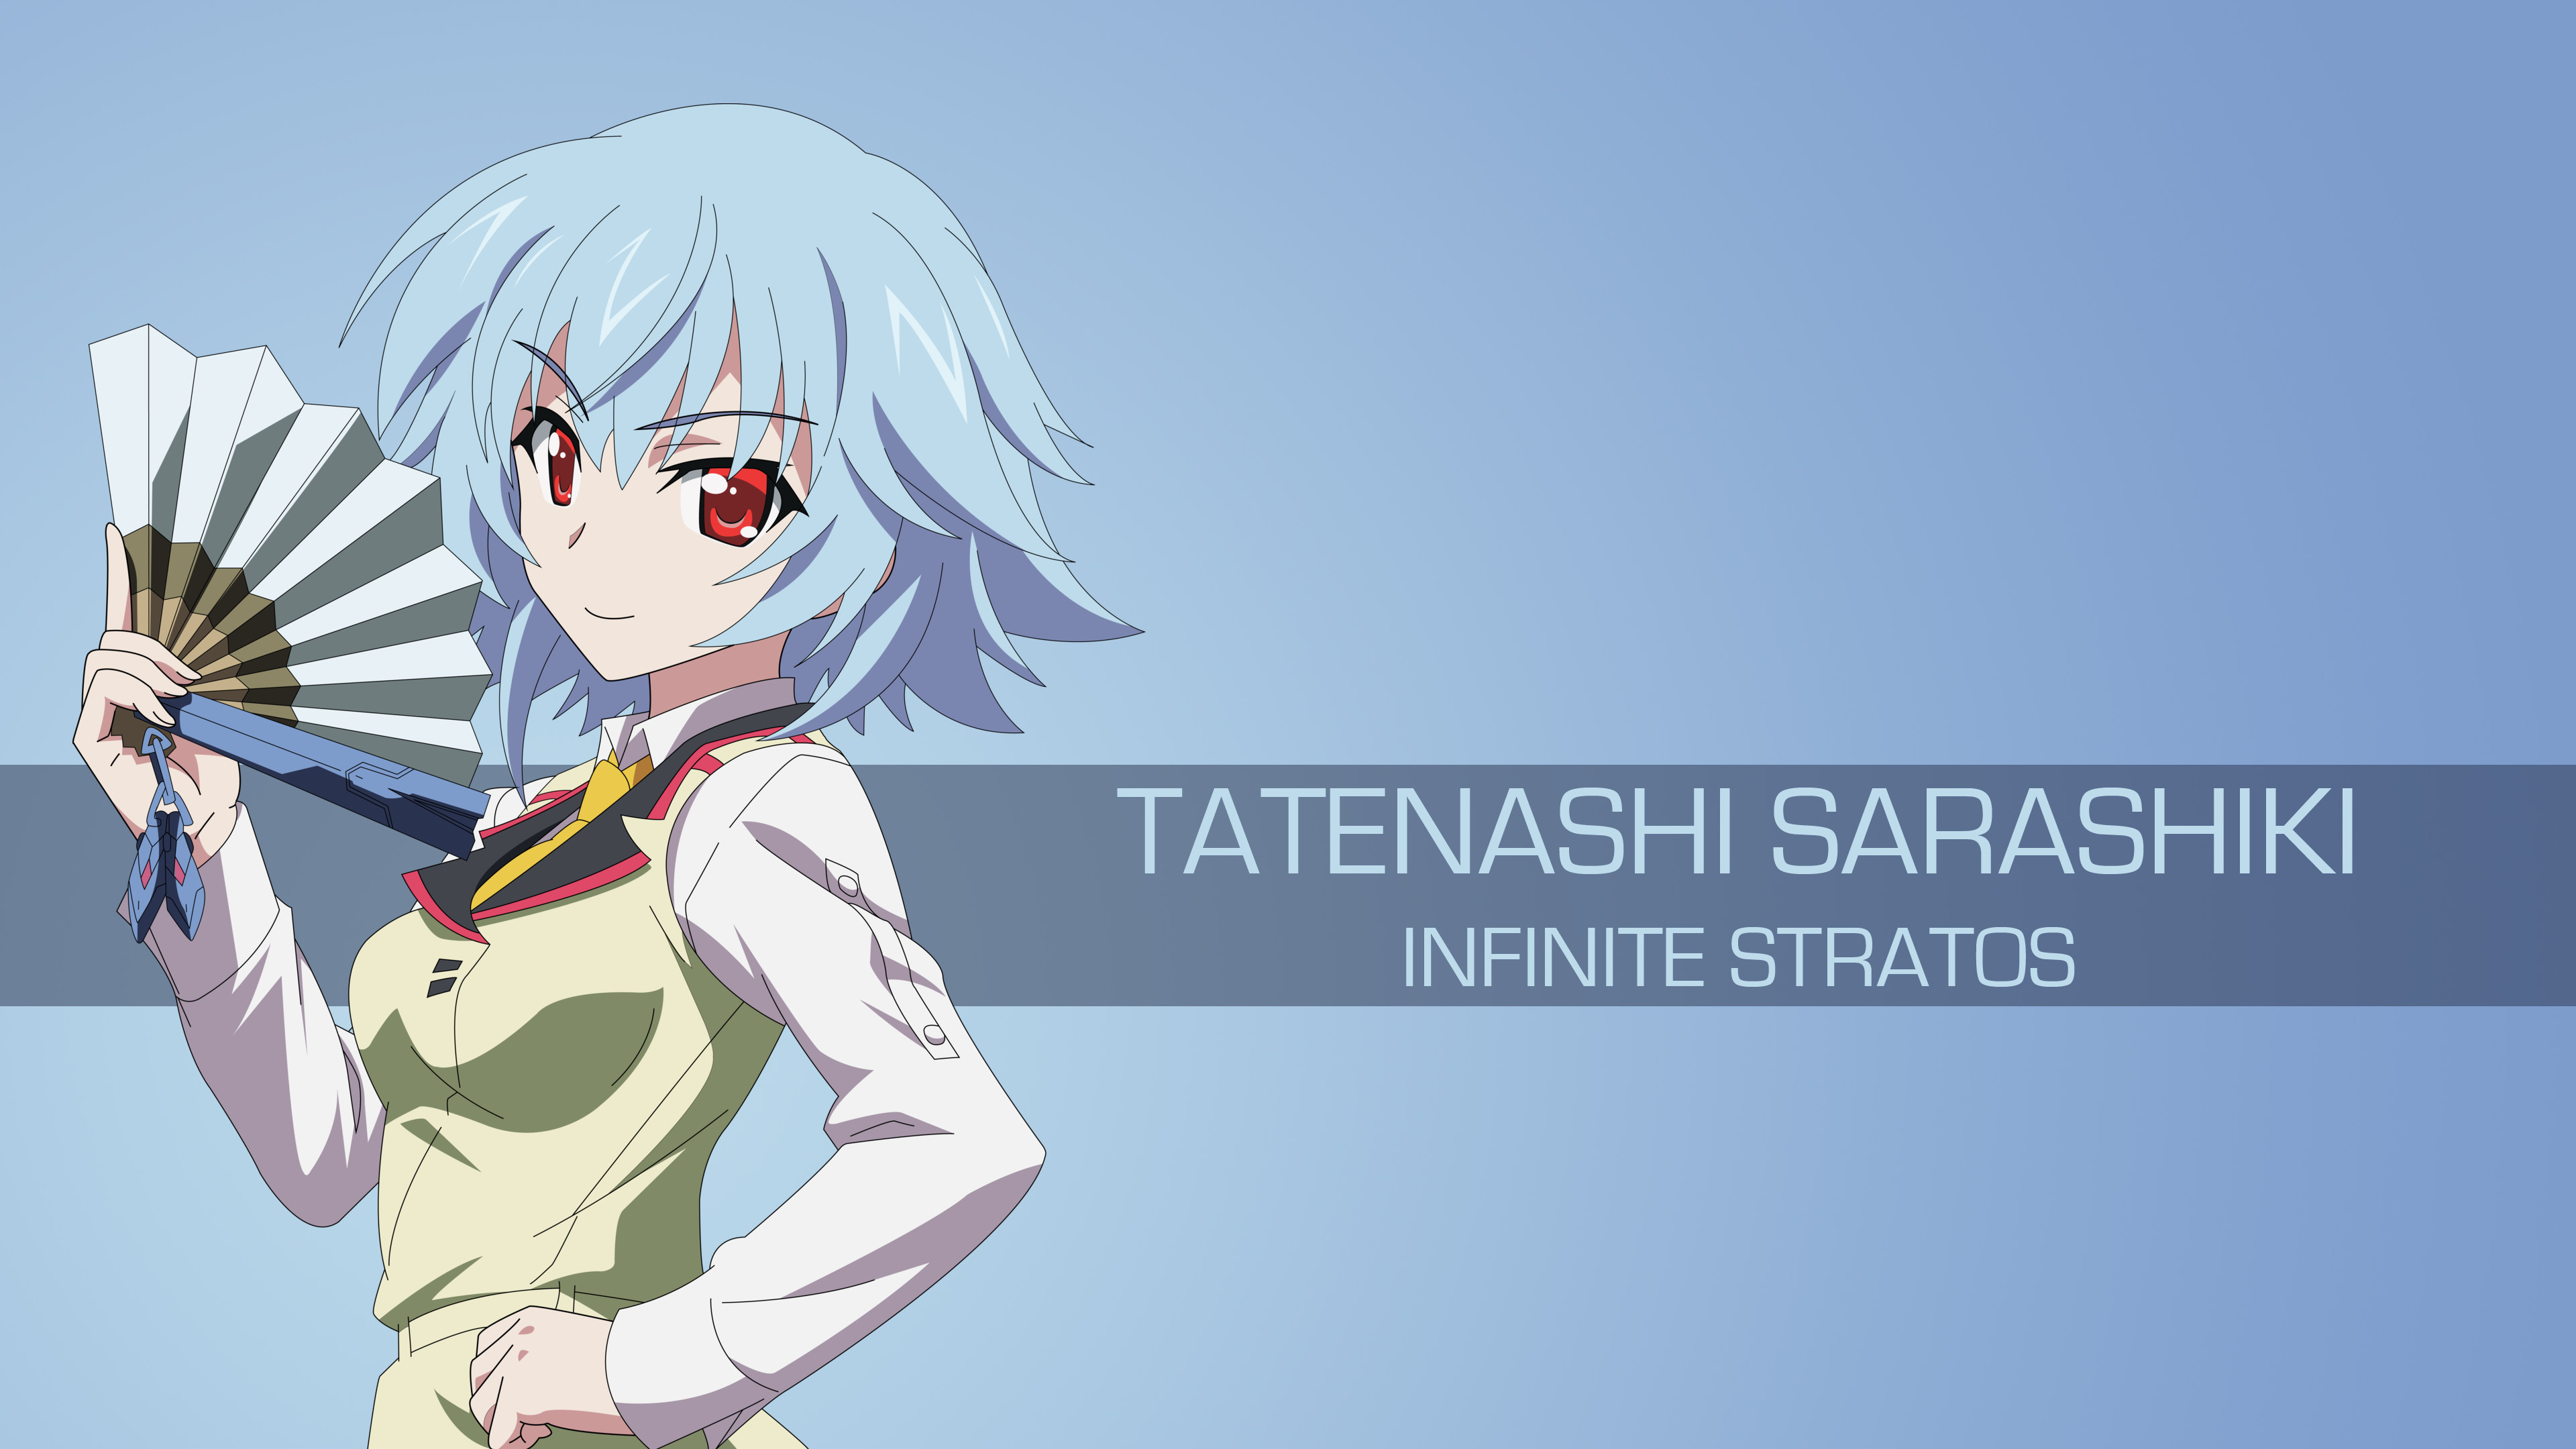 3840x2160 Infinite Stratos-Tatenashi Sarashiki by spectralfire234 Infinite Stratos-Tatenashi  Sarashiki by spectralfire234